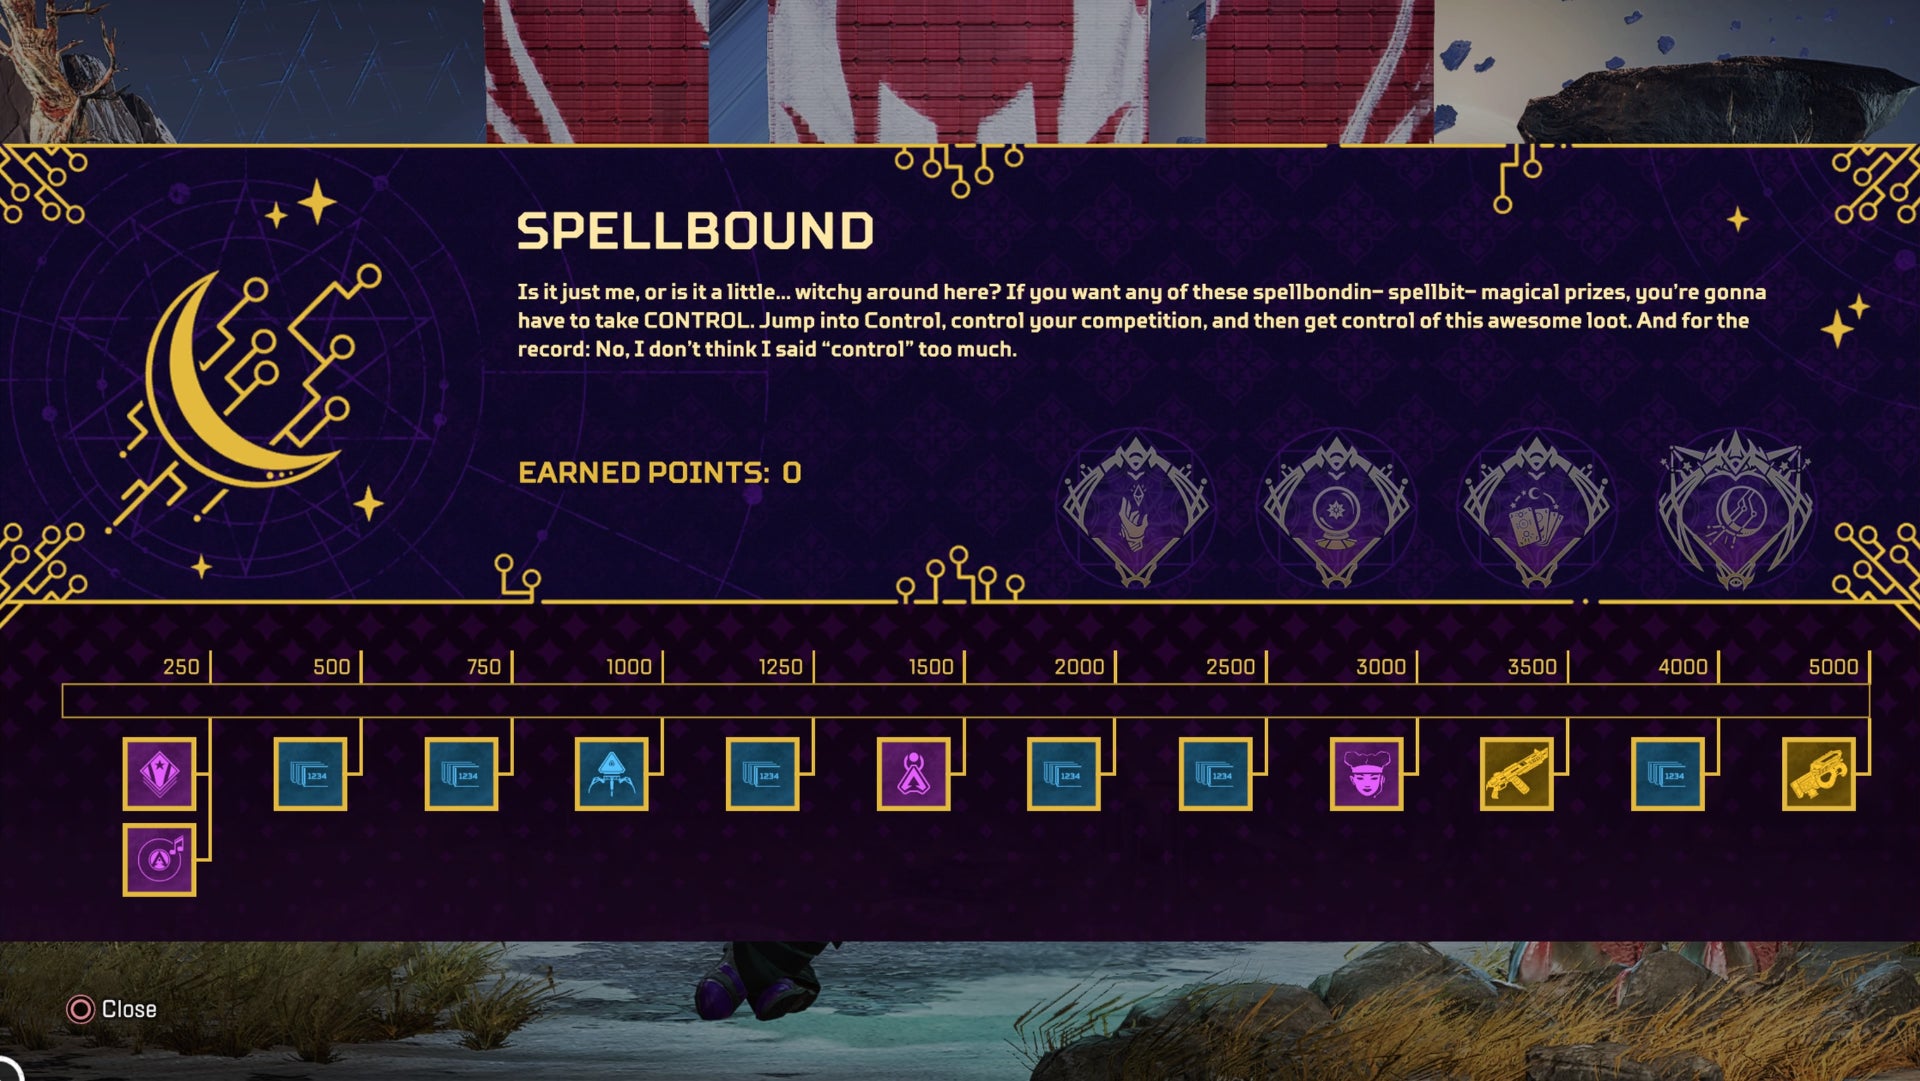 Apex Legends Spellbound Event reward Tracker